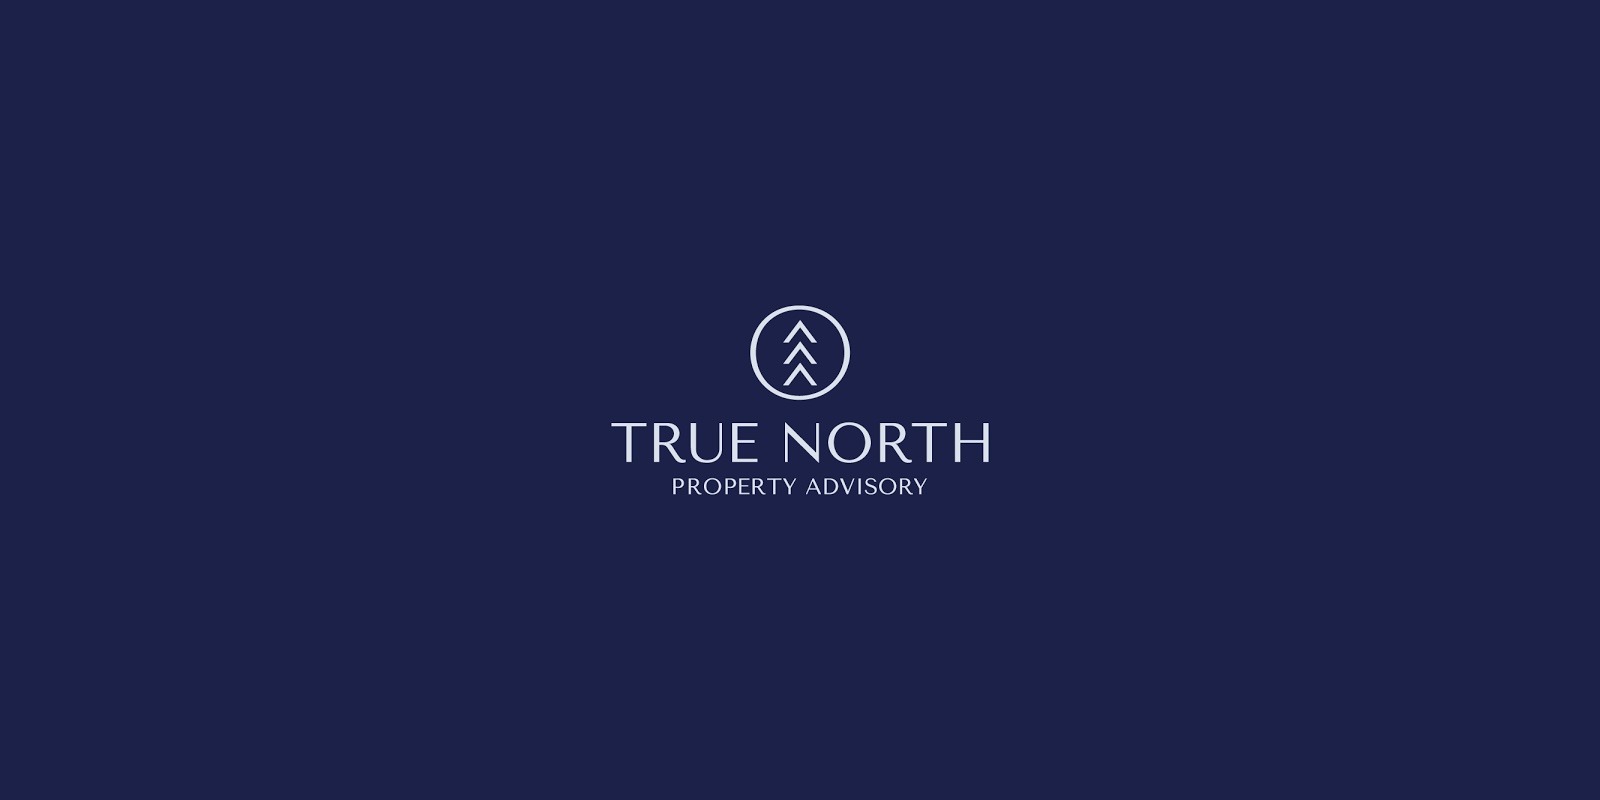 房地产咨询公司True North品牌视觉设计